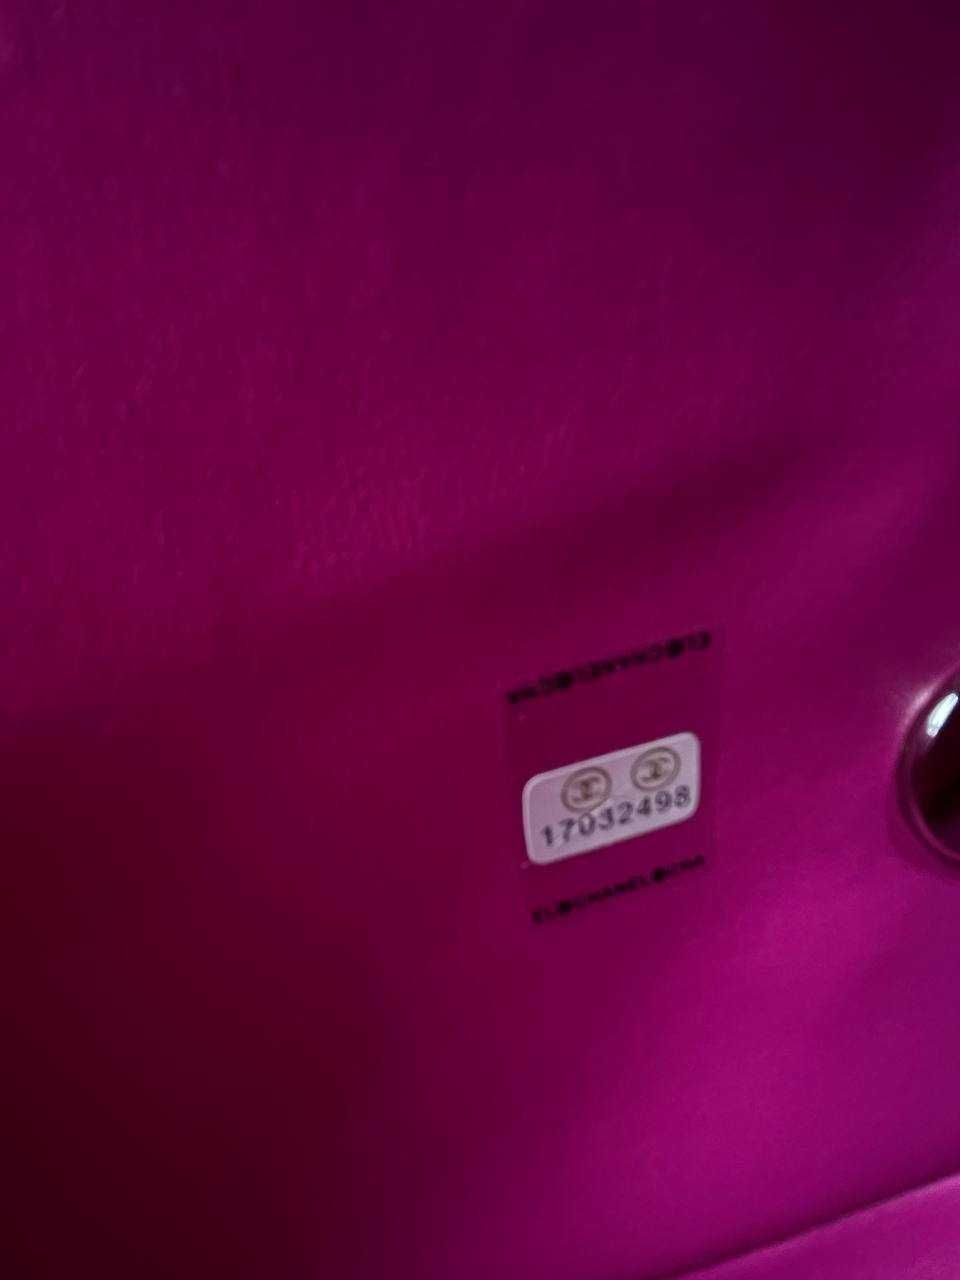 Сумка конверт стилю chanel pink mini